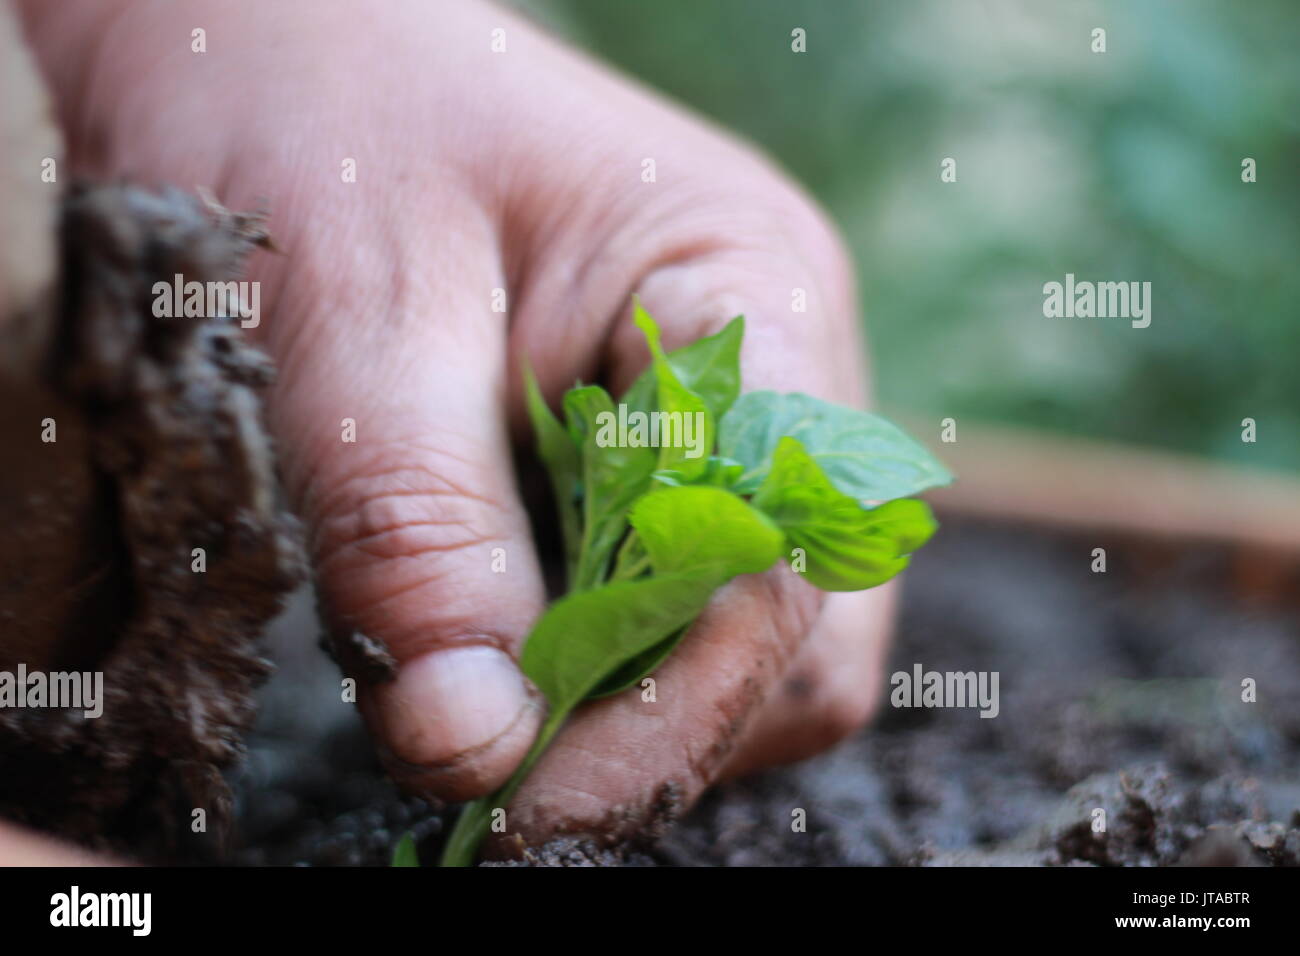 Impianto alberelli, agricoltura biologica e piantine in giardino con il giardiniere Foto Stock